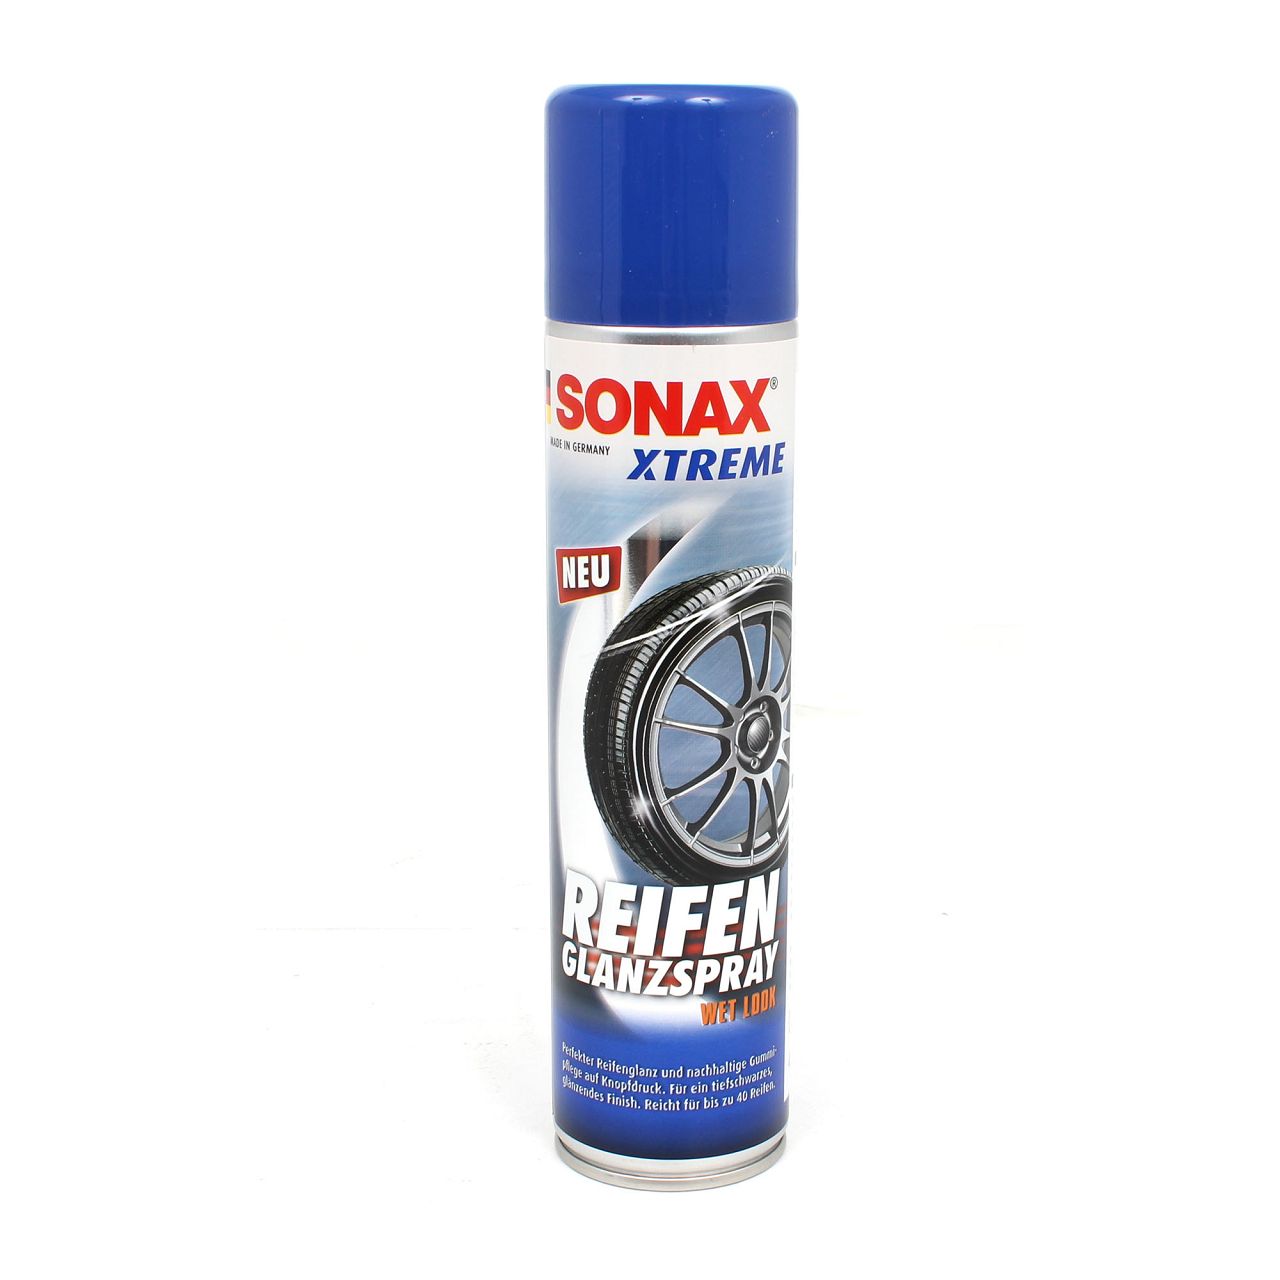 SONAX 235300 Xtreme ReifenGlanzSpray Wet Look Sprayflasche Reifenspray 400ml